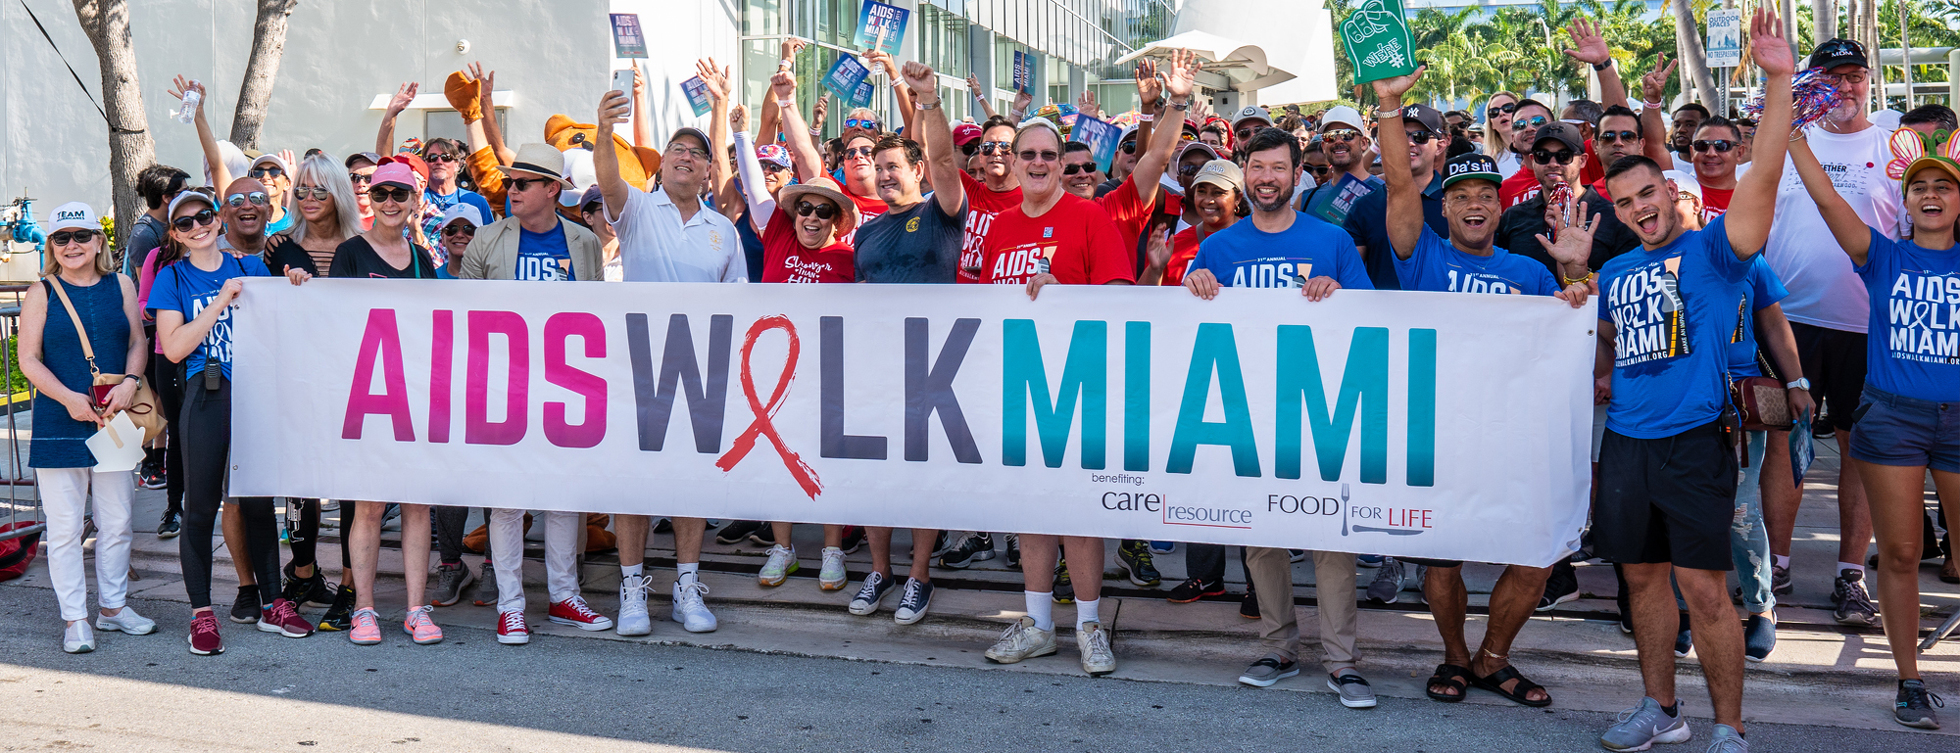 AIDS Walk Miami 2019